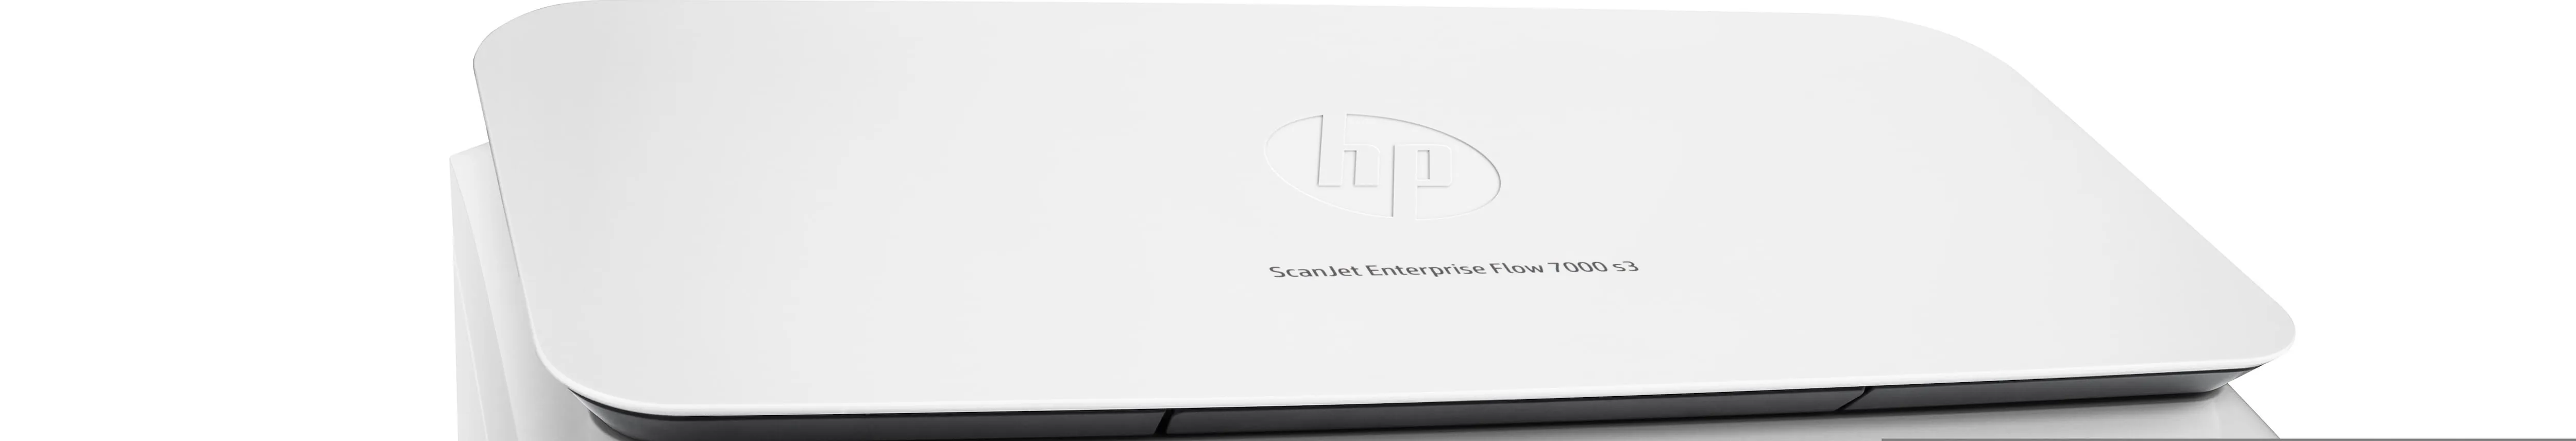 Vente HP ScanJet Enterprise Flow 7000 s3 HP au meilleur prix - visuel 8